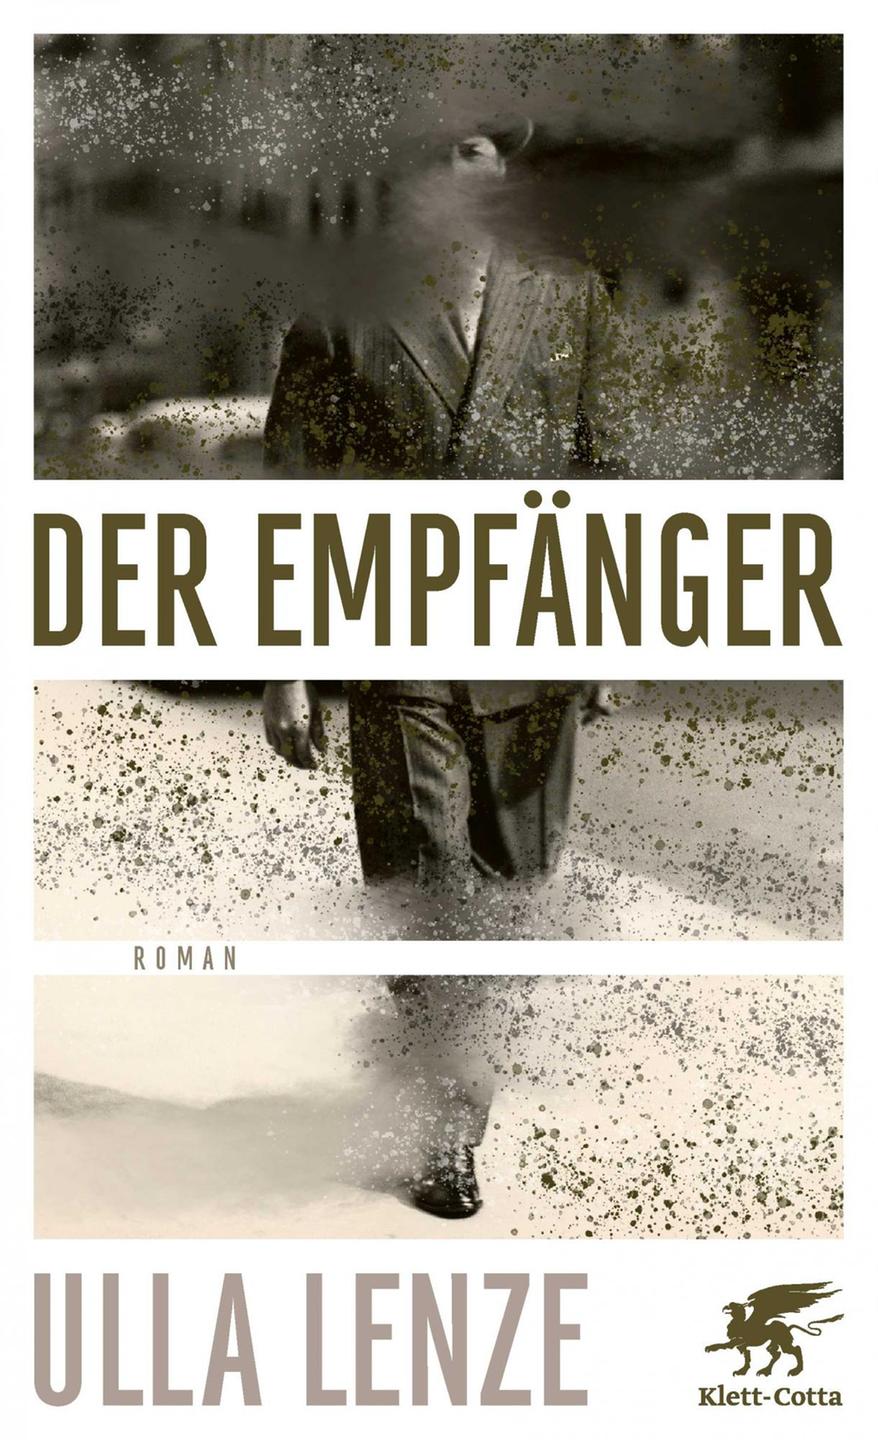 Buchcover "Der Empfänger" von Ulla Lenze. Zu sehen ist ein historisches Foto von einem Mann, der eine Straße entlang läuft.